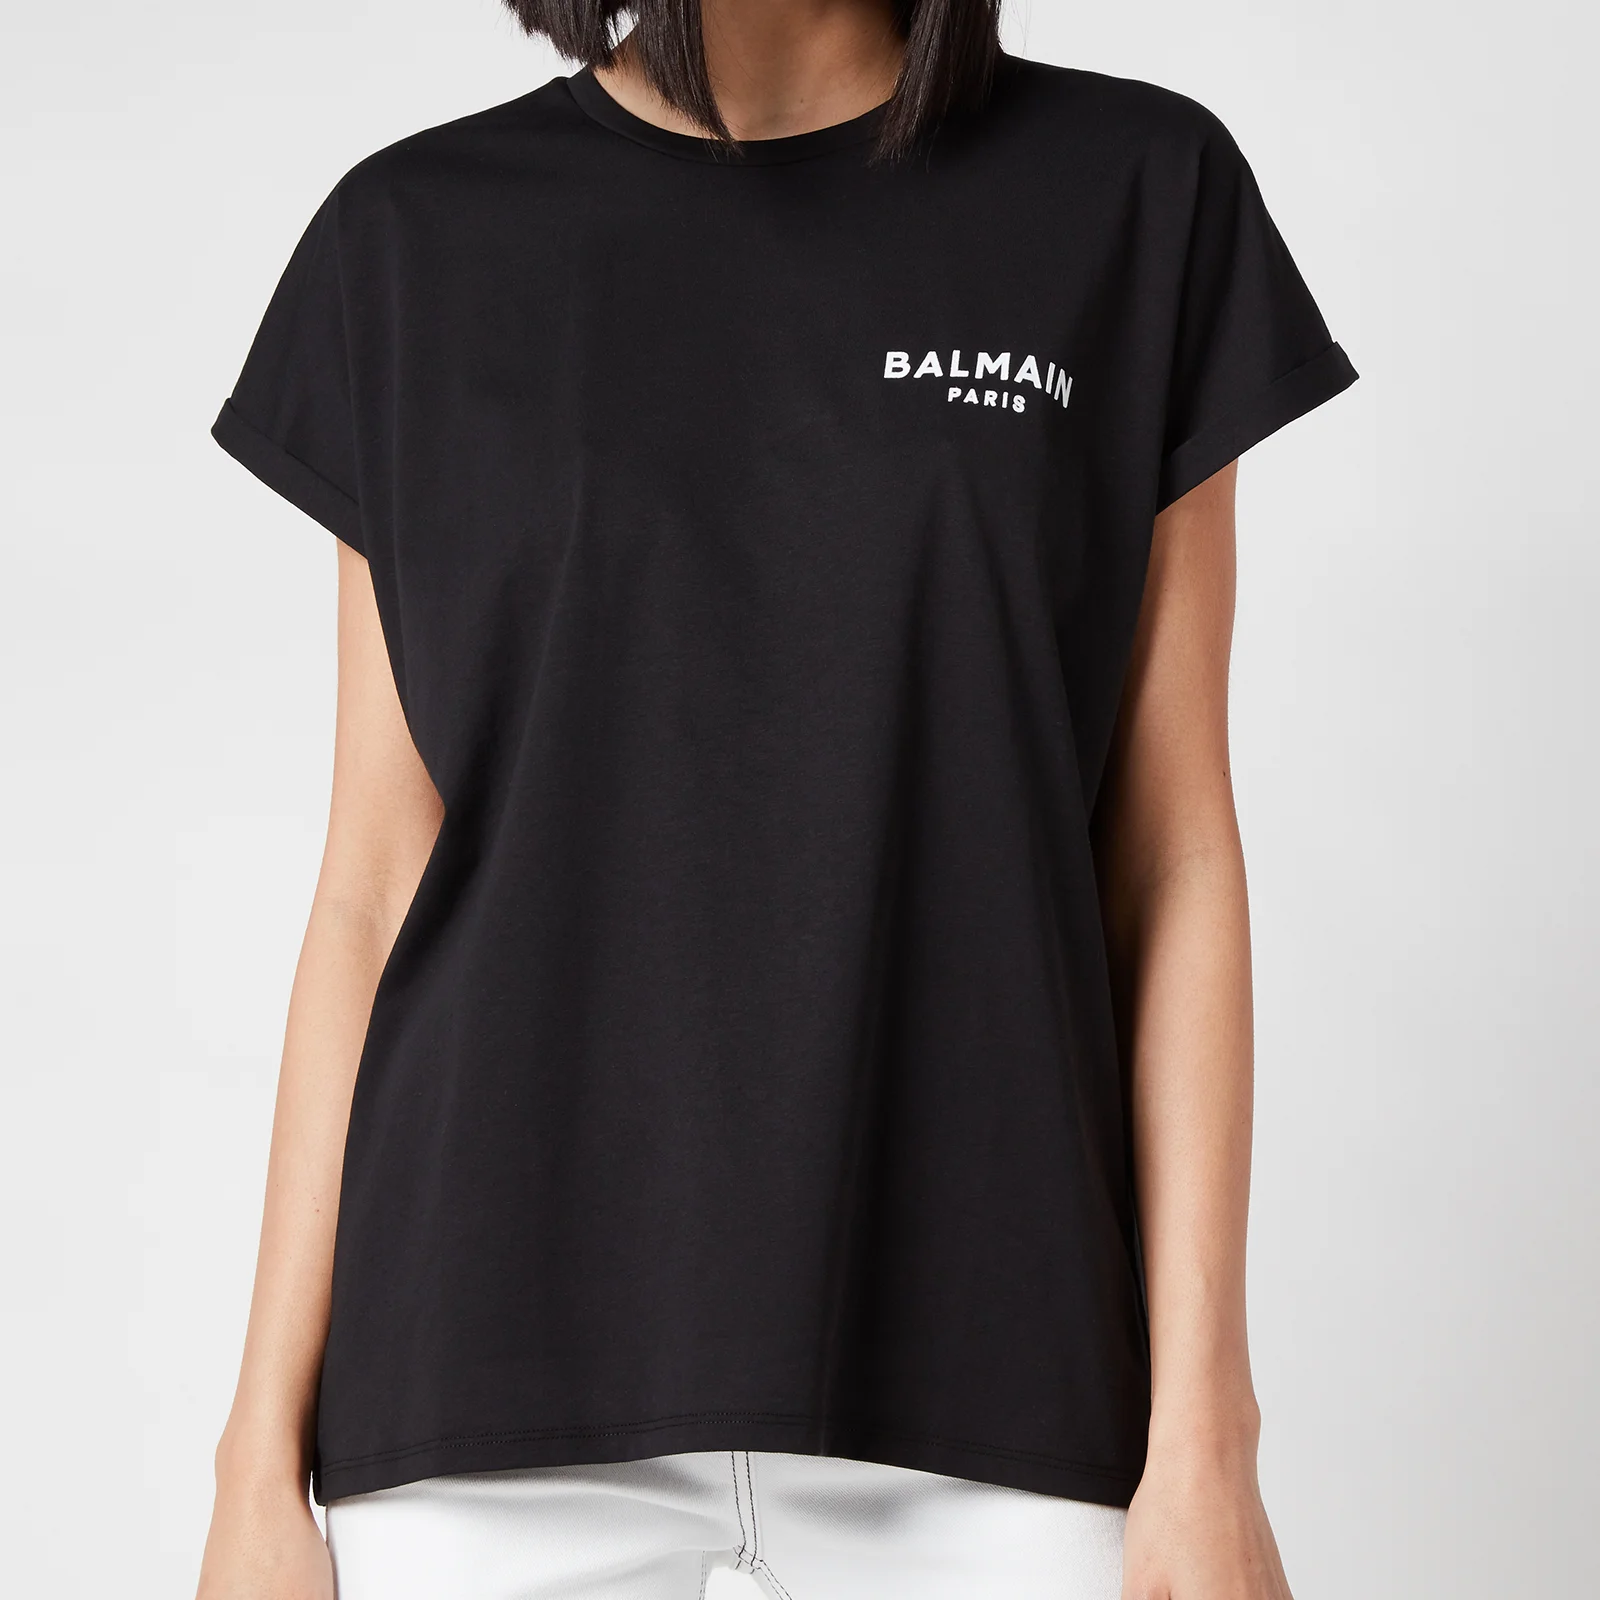 Balmain Women's Flocked Logo Detail T-Shirt - Noir/Blanc Image 1